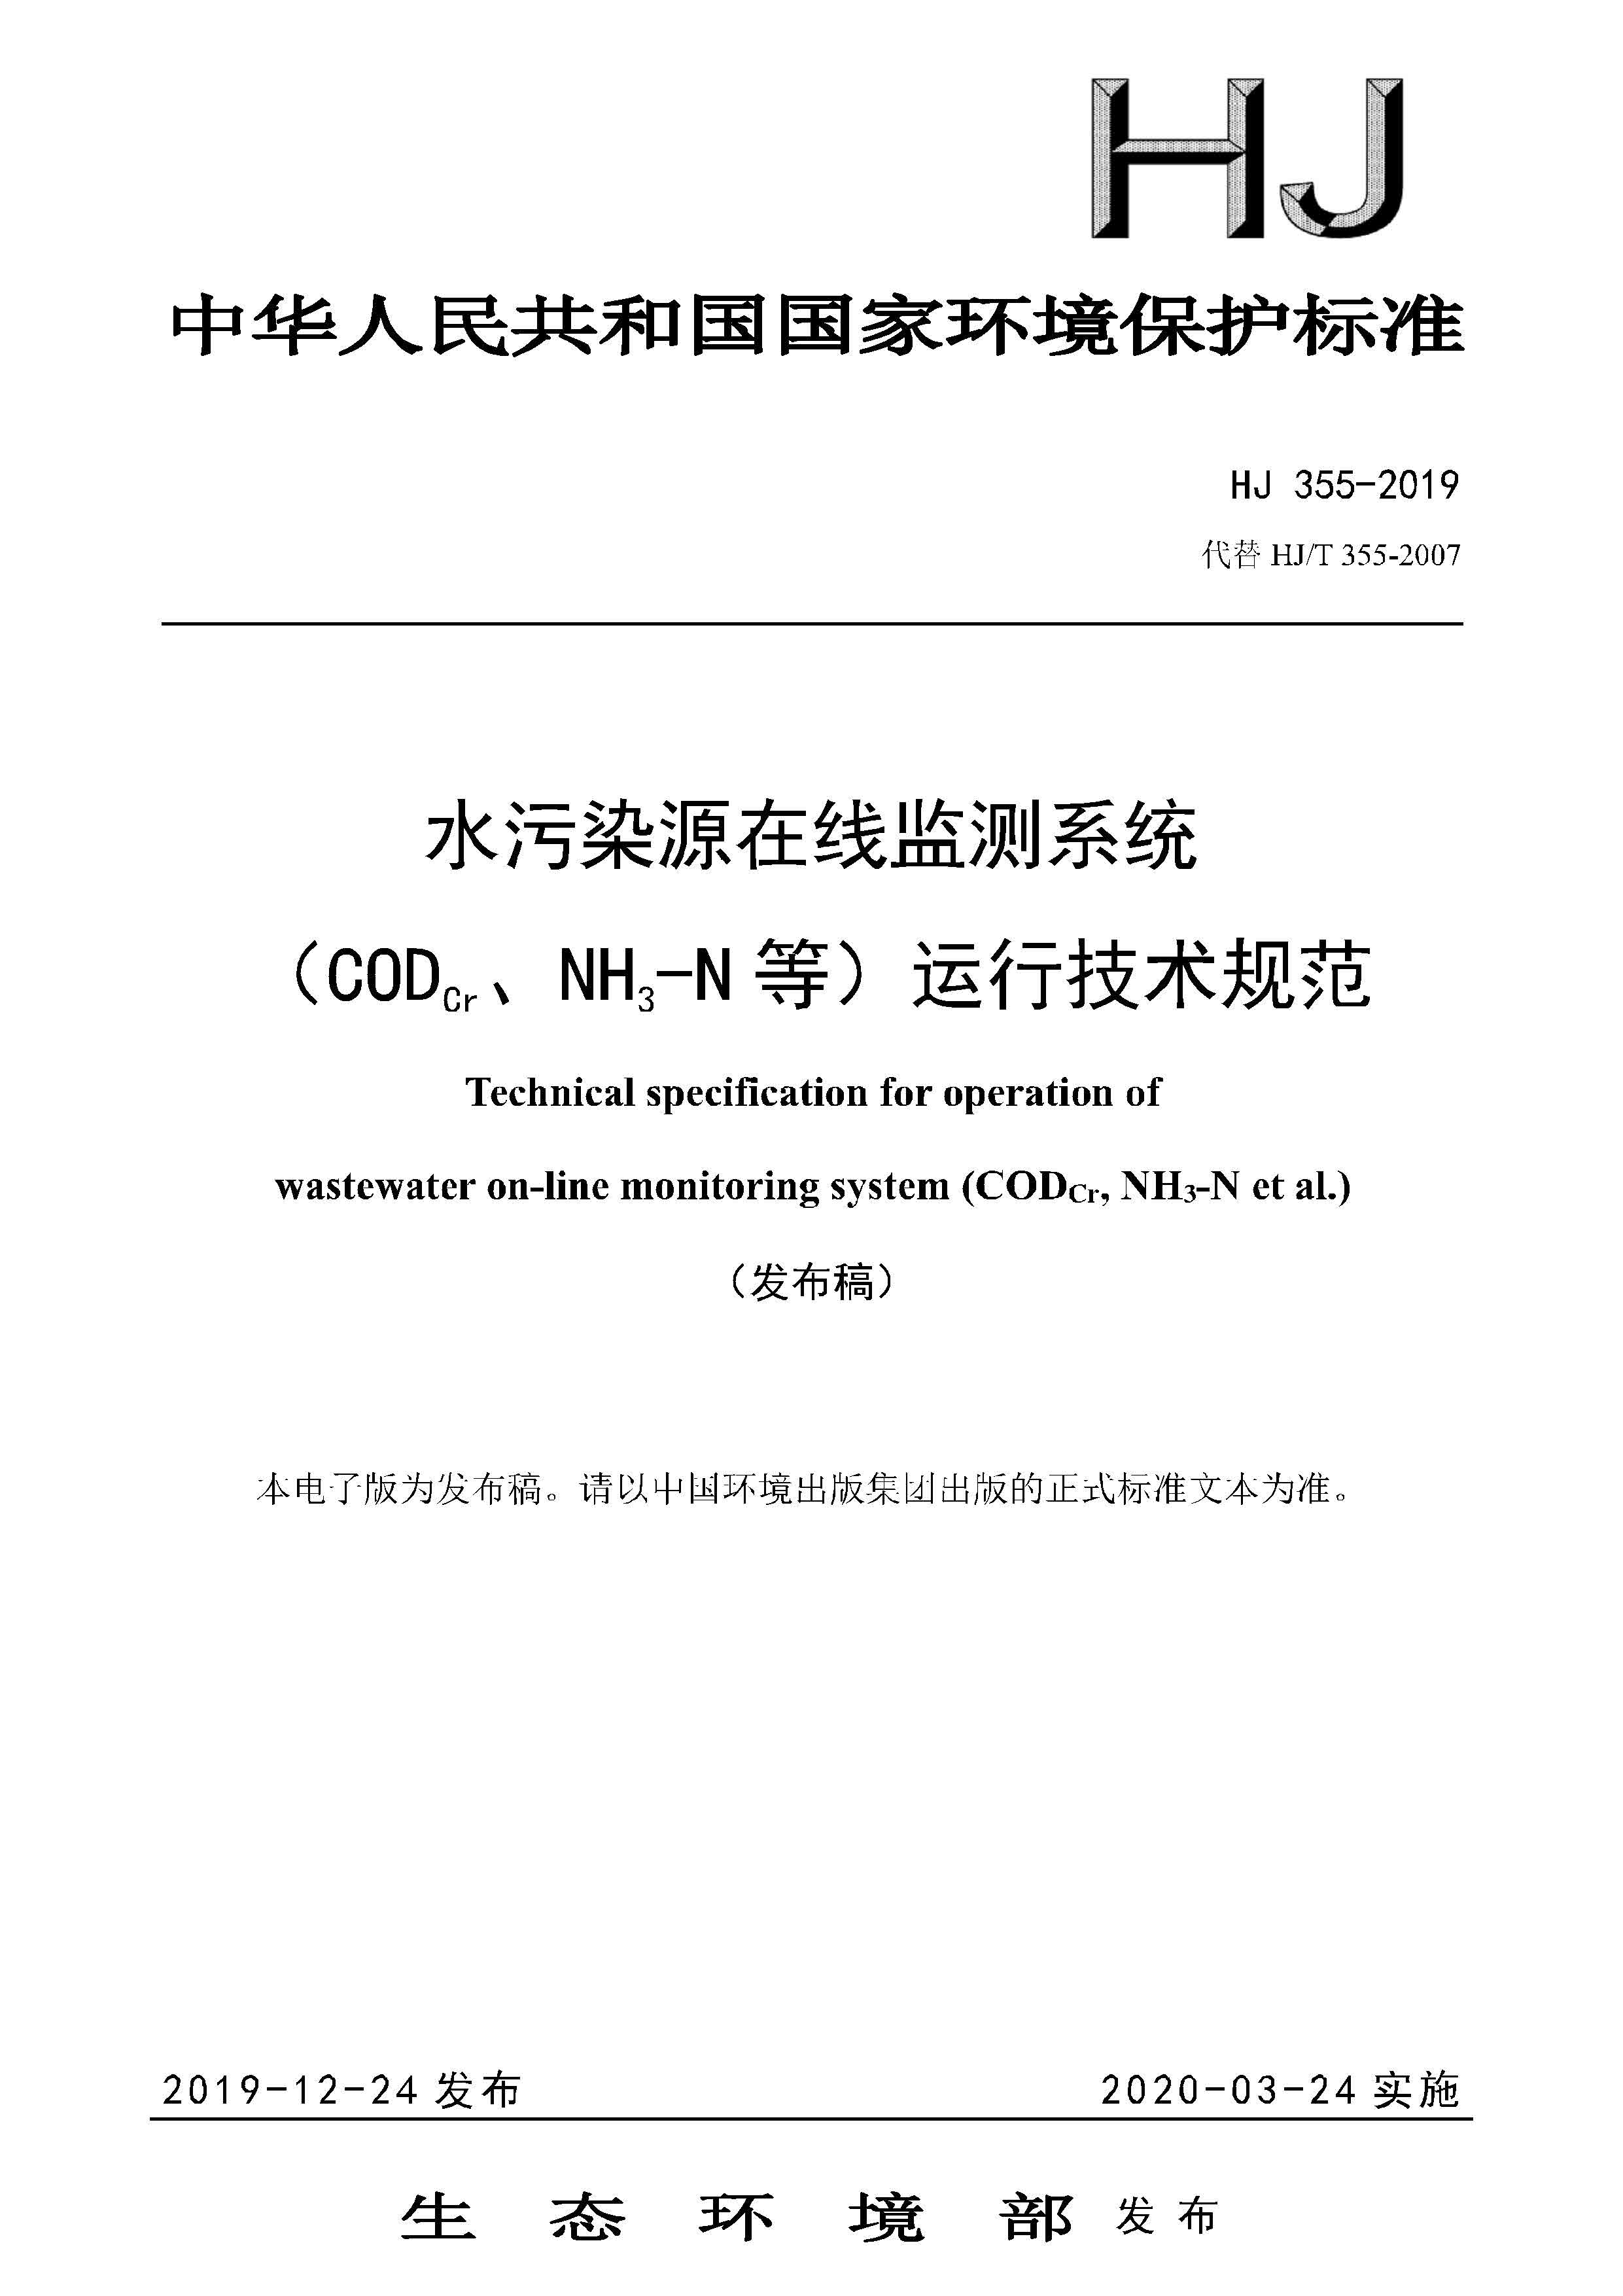 HJ 355-2019 水污染源在线监测系统（CODCr、NH3-N 等）运行技术规范 可下载